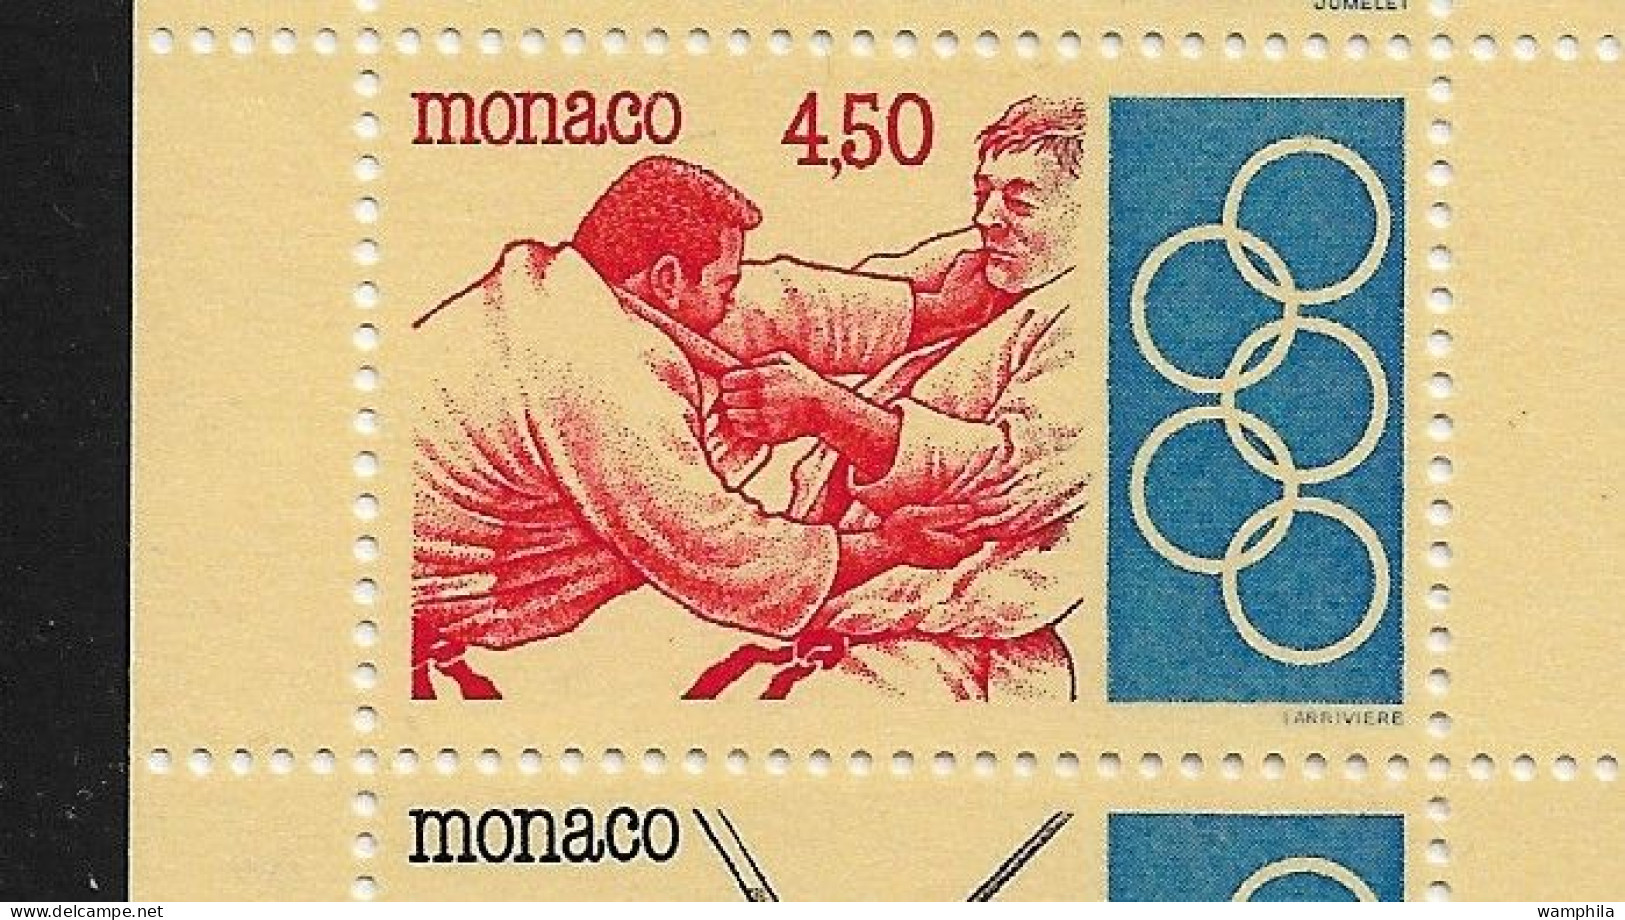 Monaco 1993. Carnet N°11, J.O .Anneaux, Judo, Escrime, Haies, Tir à L'arc, Haltérophilie. - Nuovi